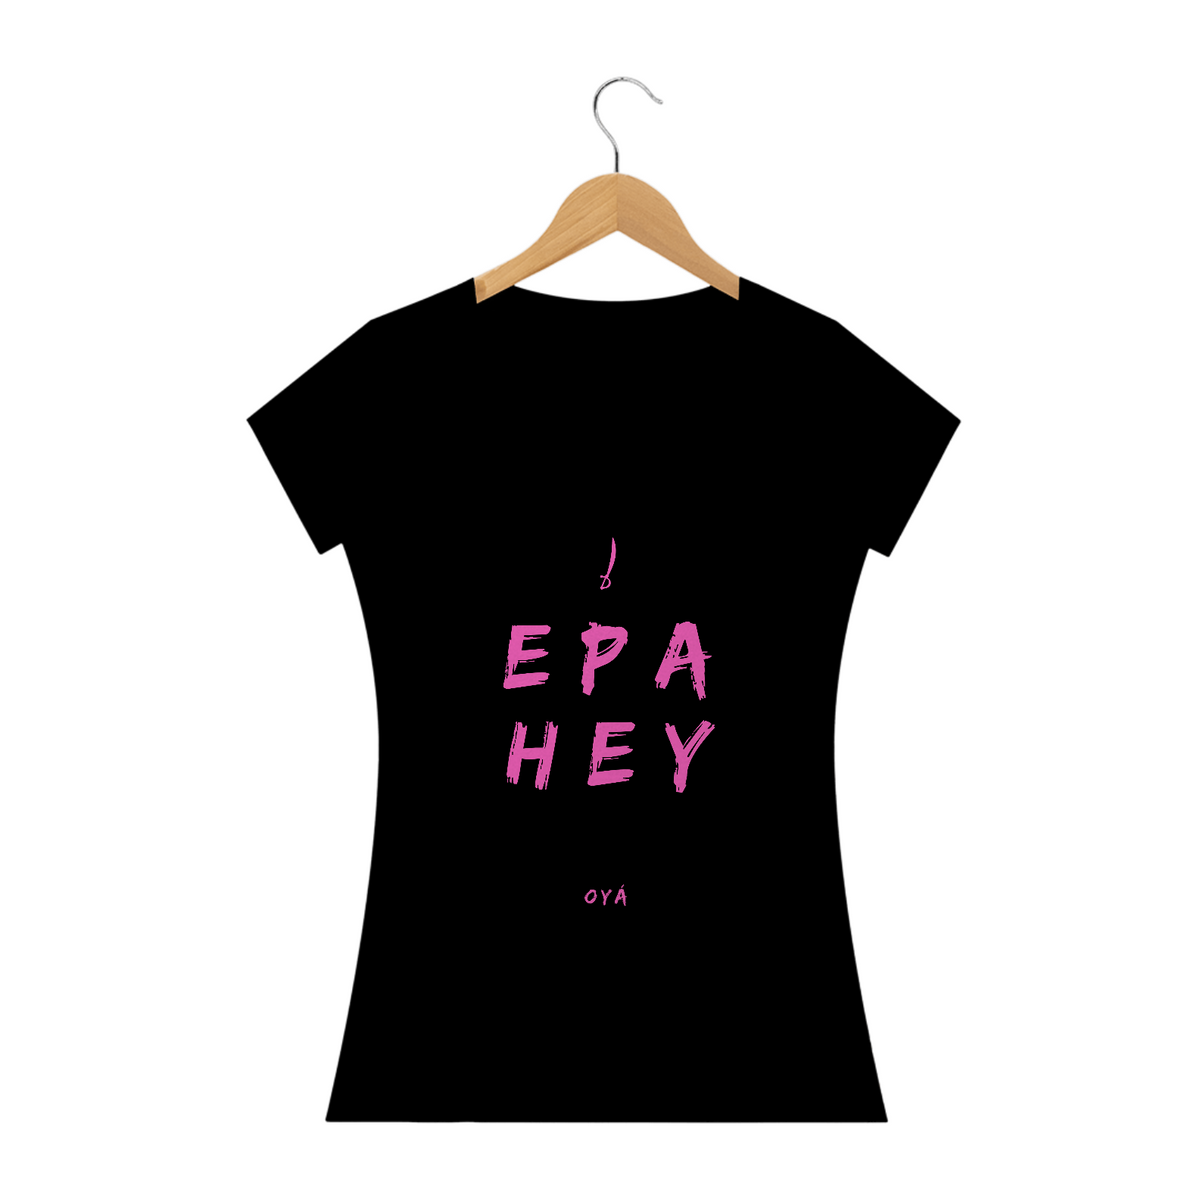 Nome do produto: Camiseta Feminina Oya Saudação  Epa Hey Oyá  